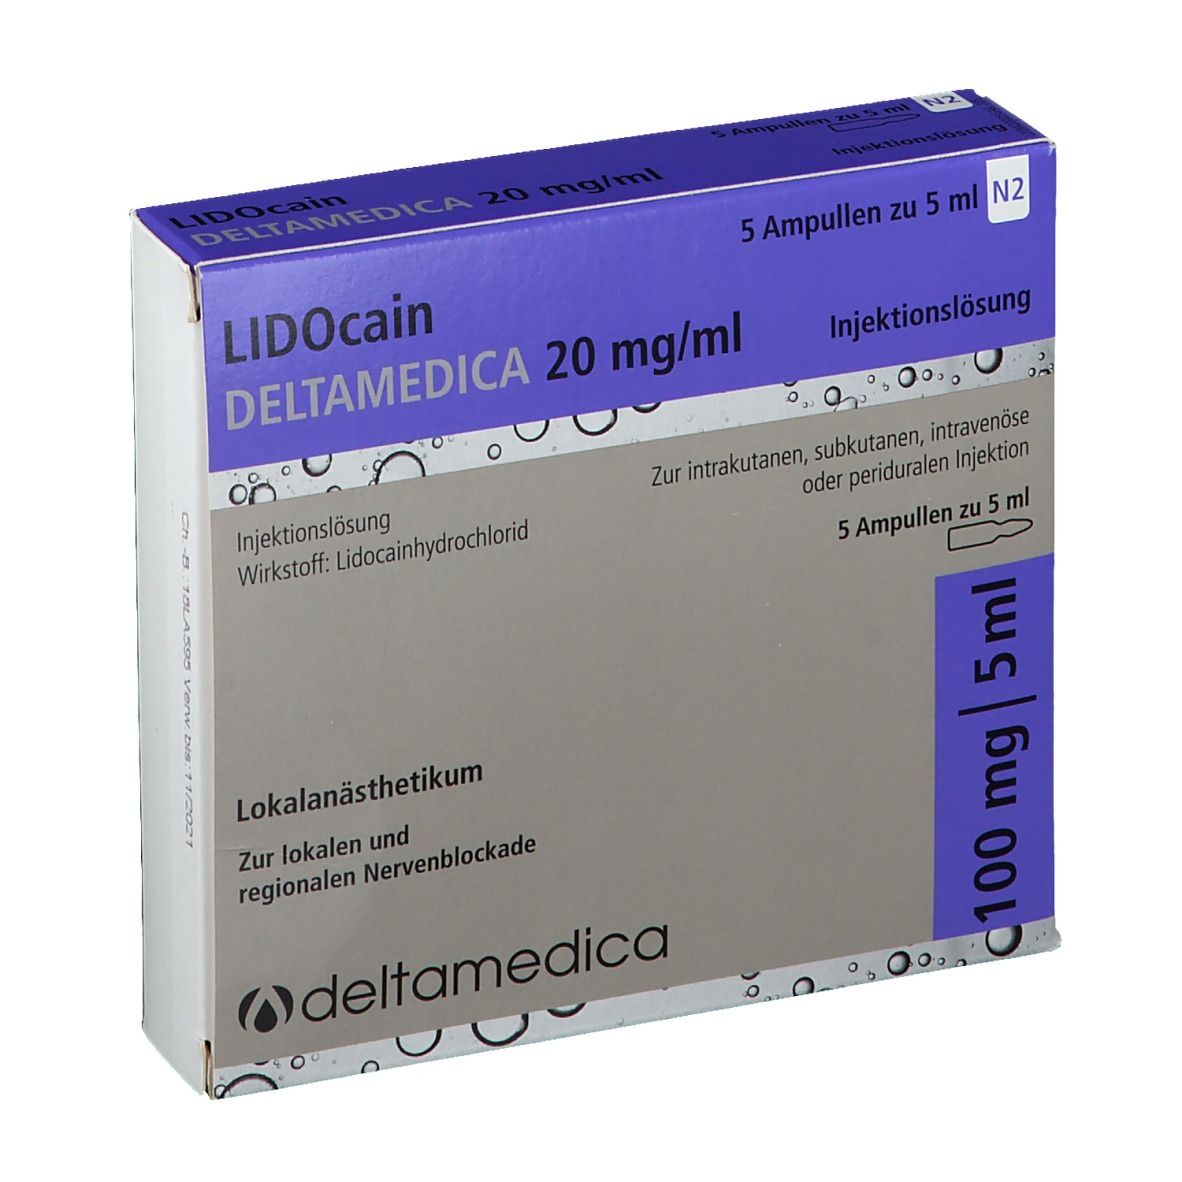 LIDOcain DELTAMEDICA 20 mg/ml